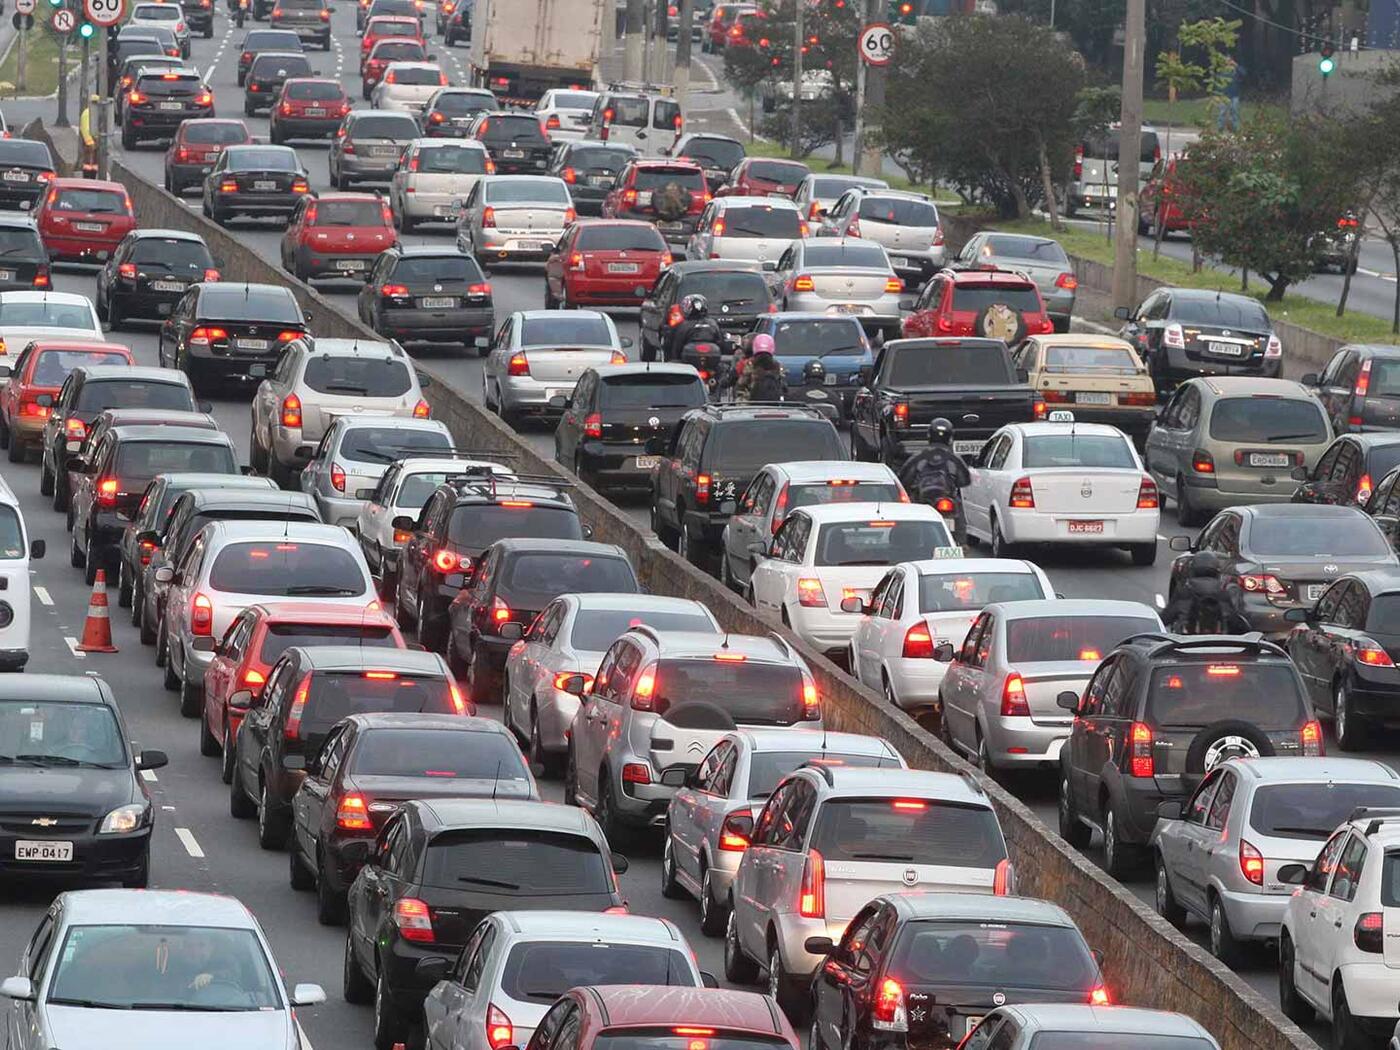 Brazil Traffic Jam